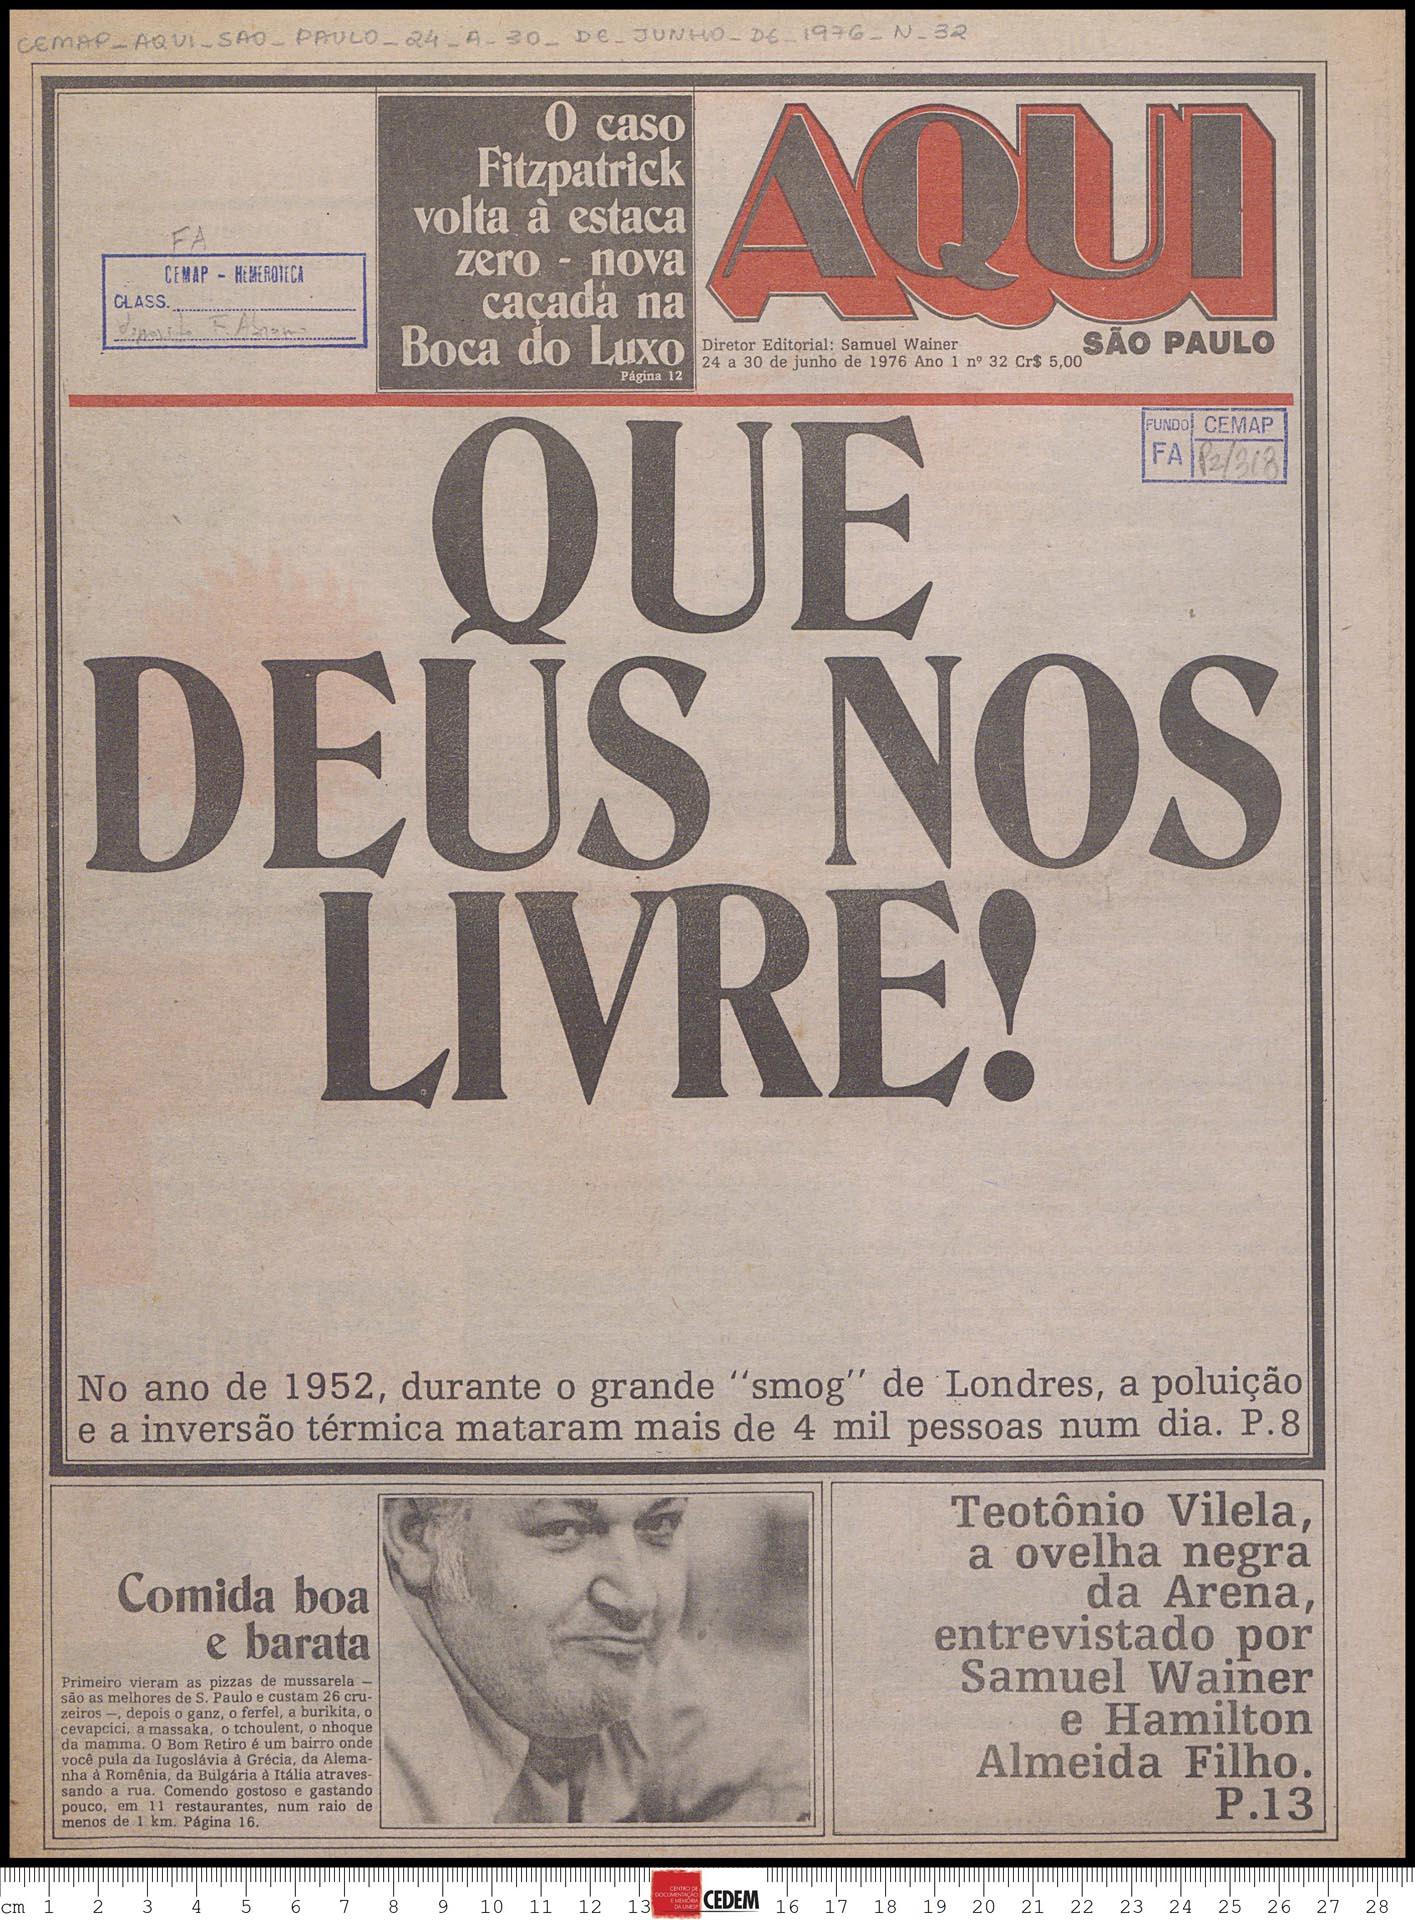 Aqui São Paulo - 24 a 30 de junho de 1976 n 32